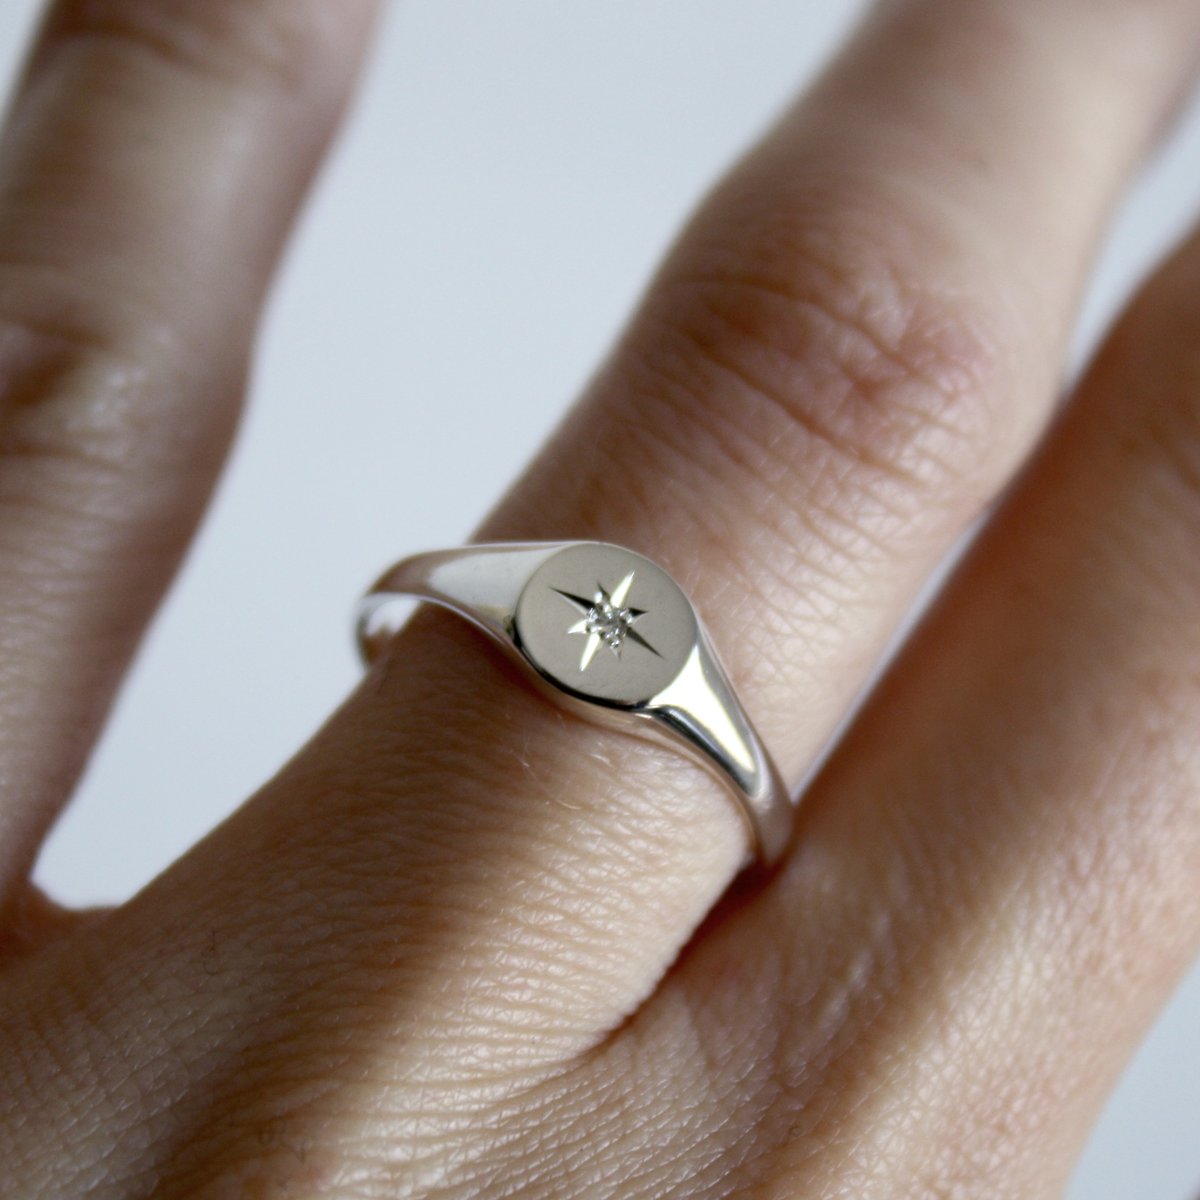 Celestial signet ring on hand